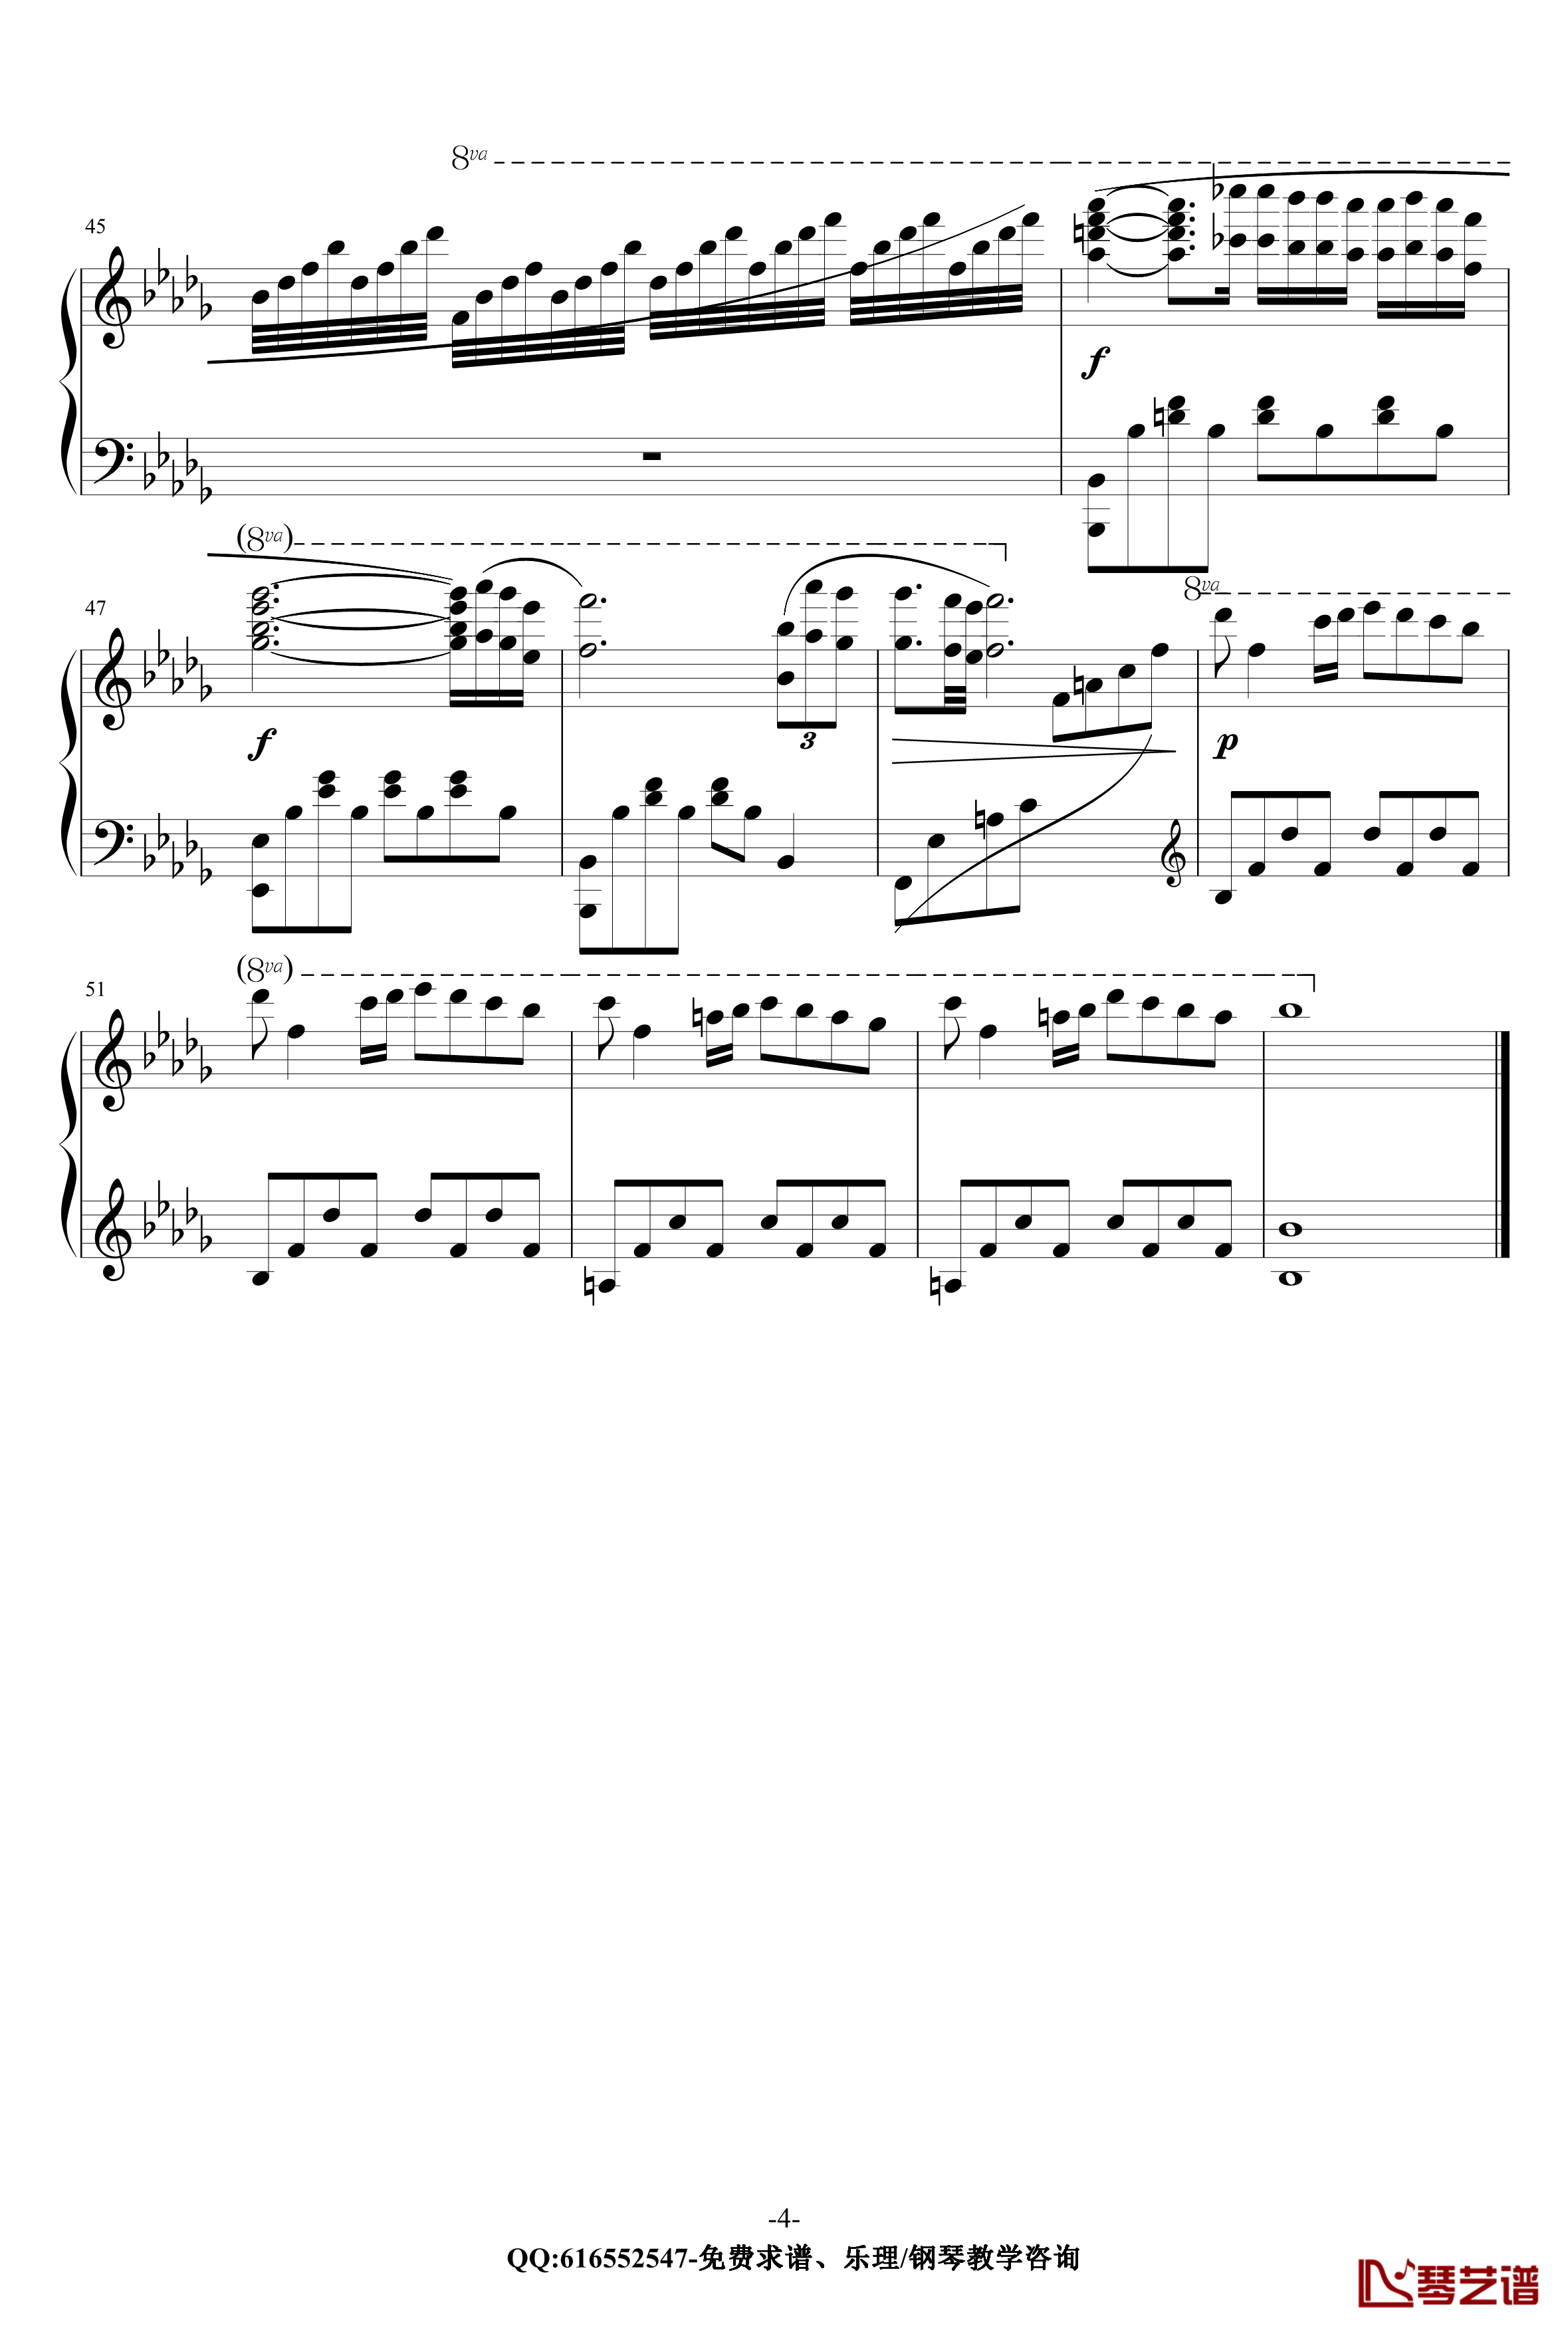 秋日私语钢琴谱-金龙鱼原声独奏版170714-克莱德曼4